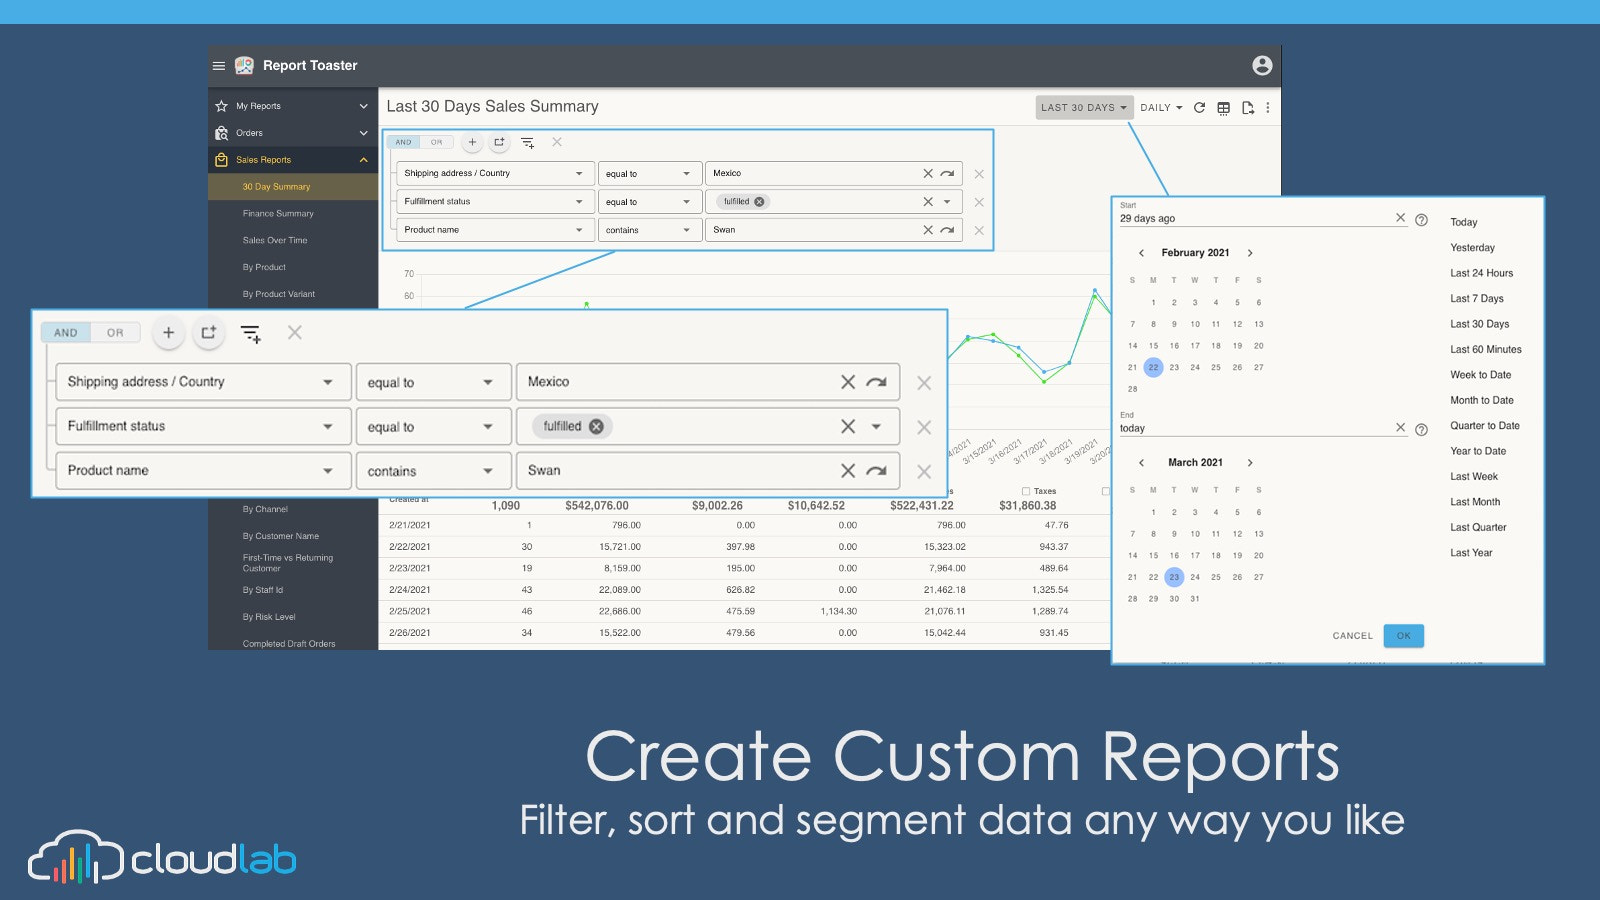 Crea informes personalizados filtrando, ordenando y segmentando datos